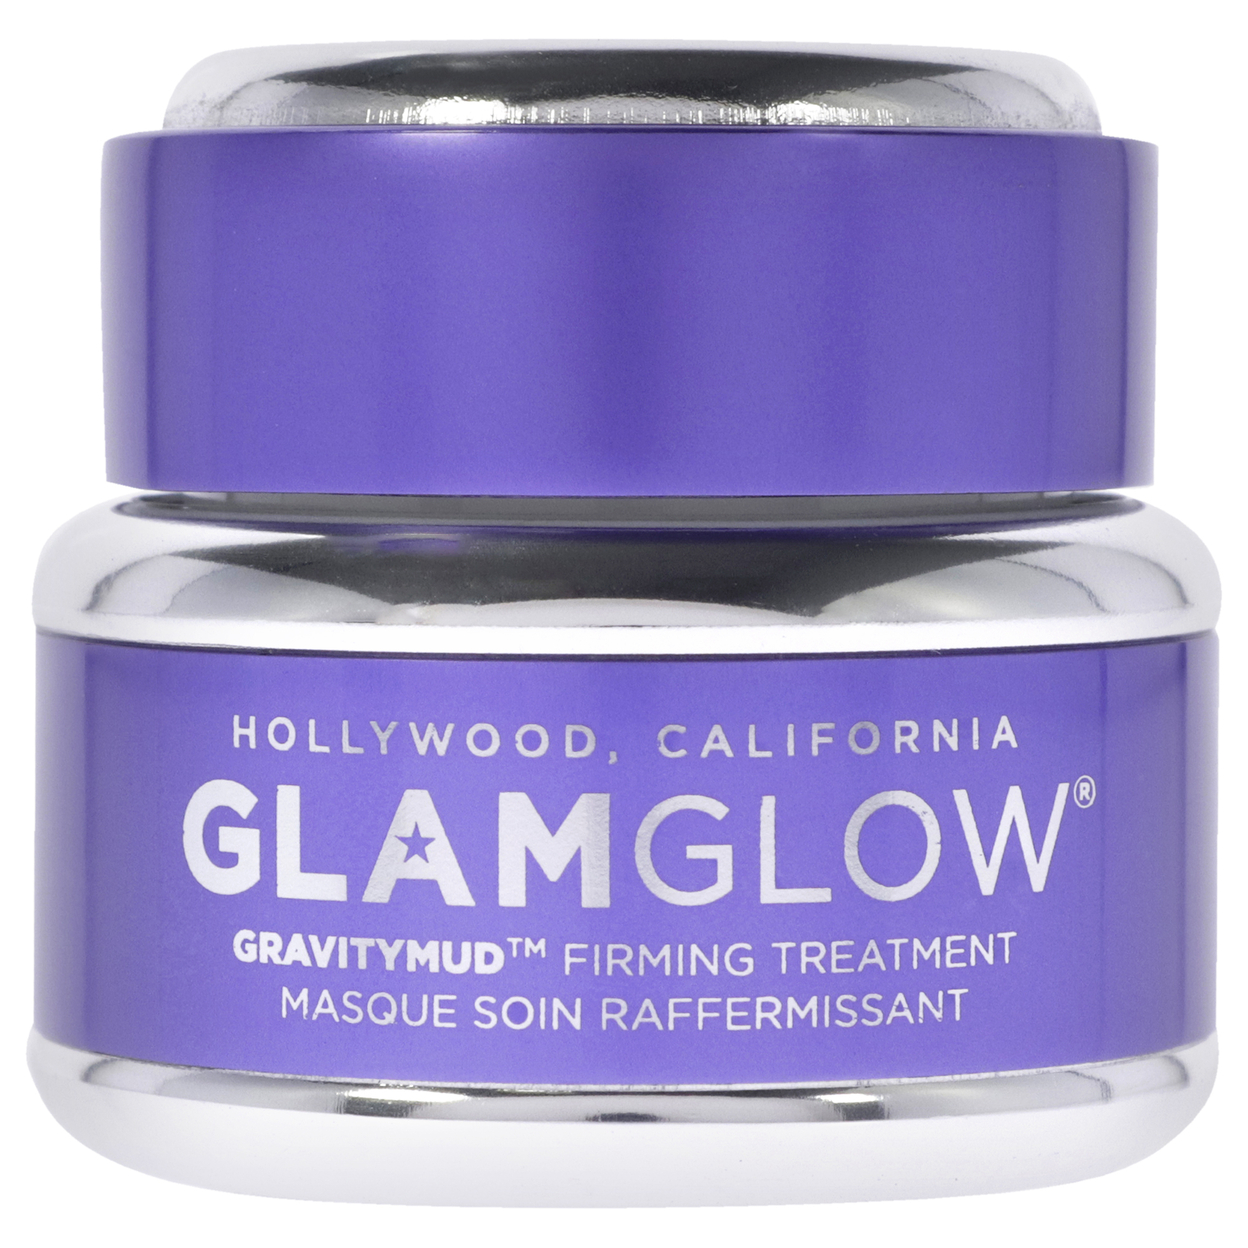 Glamglow Gravitymud Firming Treatment 0.5 Oz